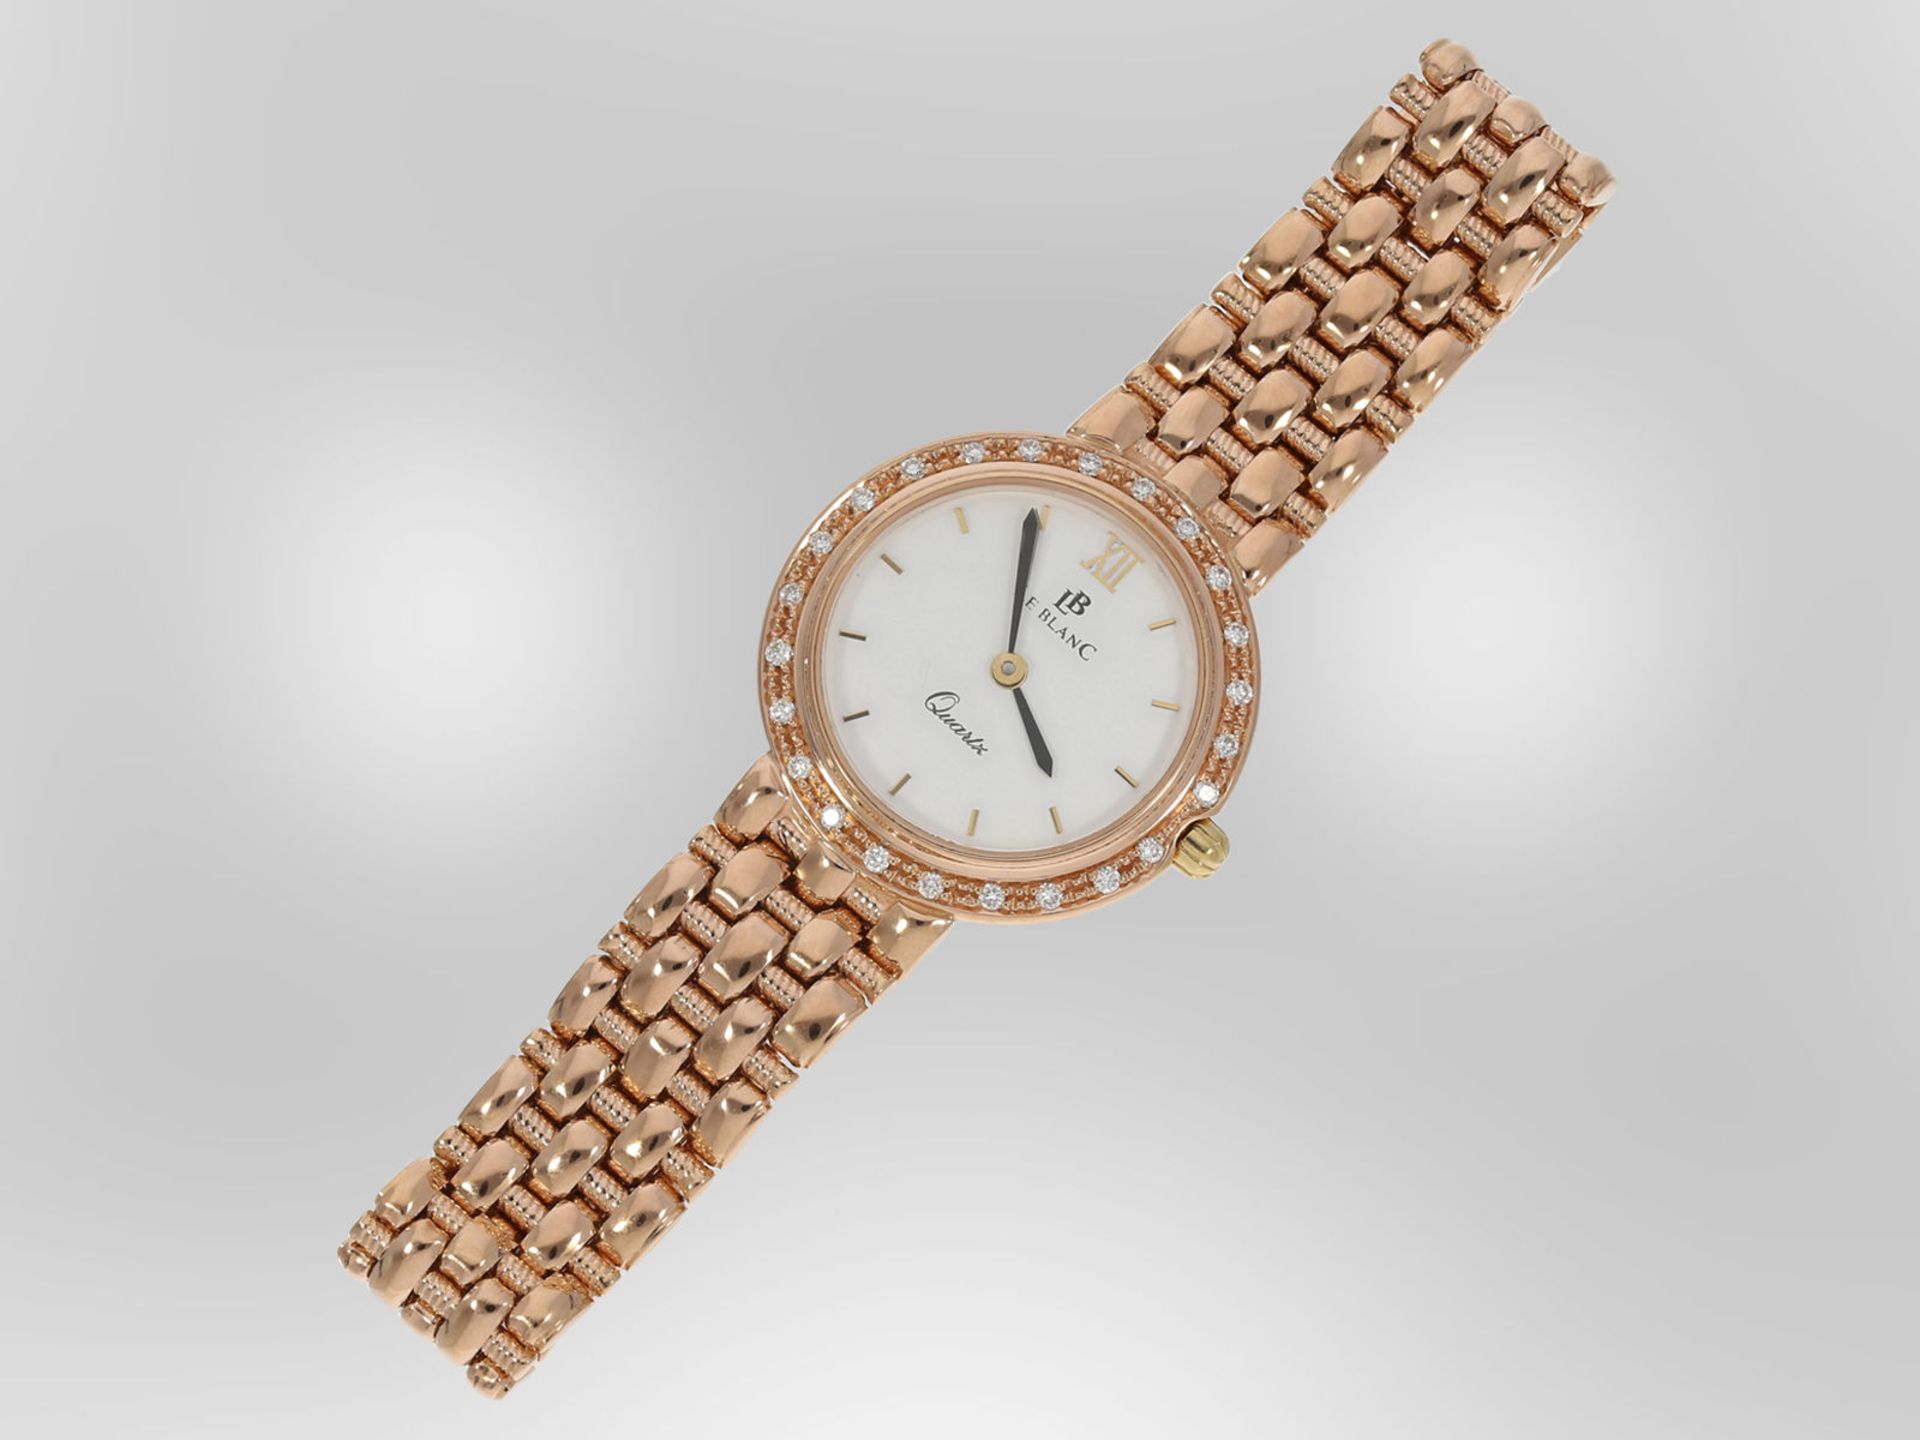 Armbanduhr: hochwertige rotgoldene Schmuckuhr mit Brillantbesatz, insgesamt ca. 0,24ct, 14K - Image 2 of 4